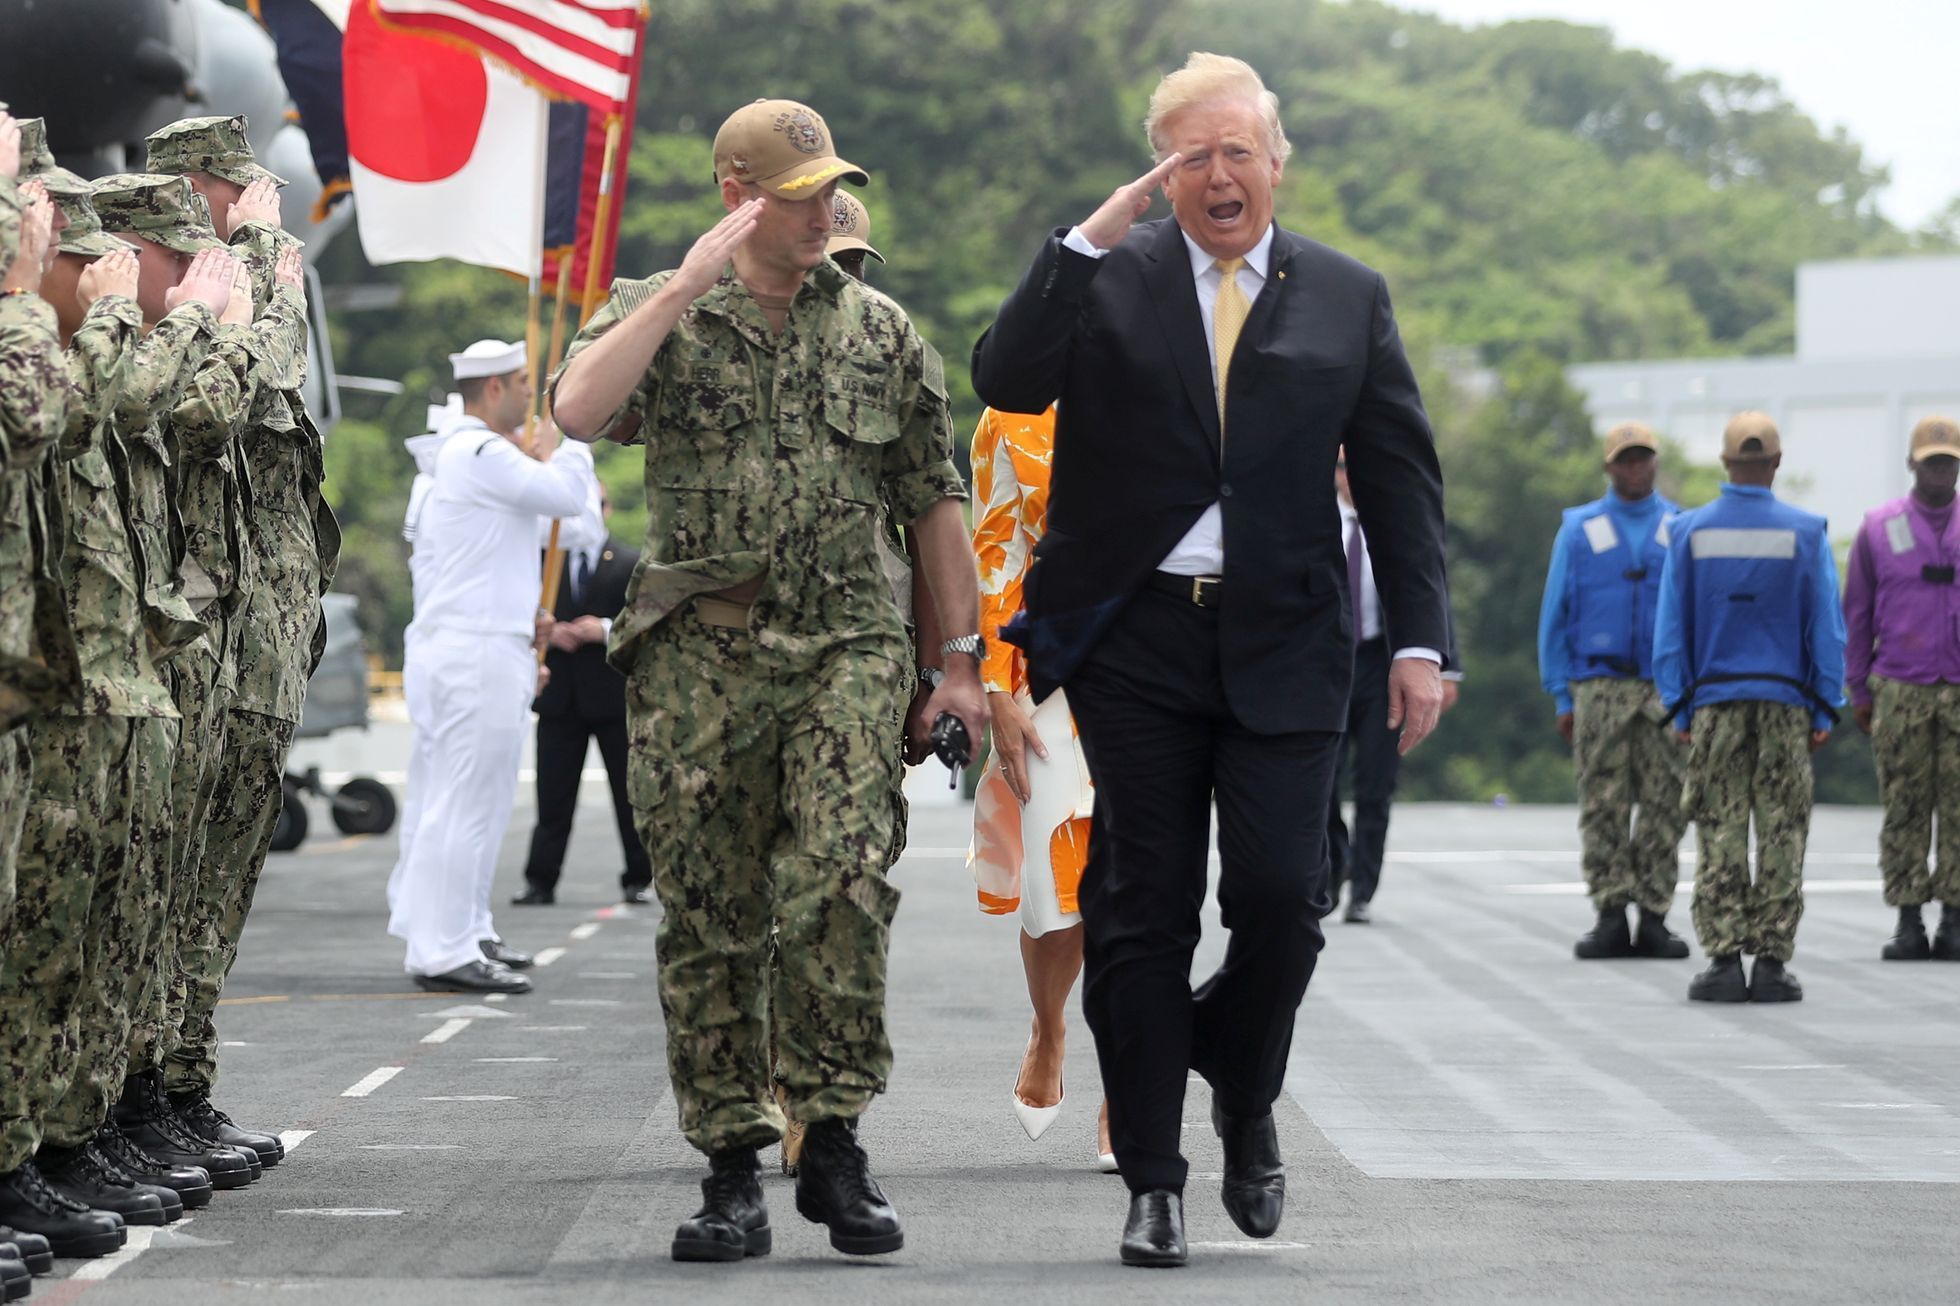 Donald Trump s americkými vojáky v Japonsku.